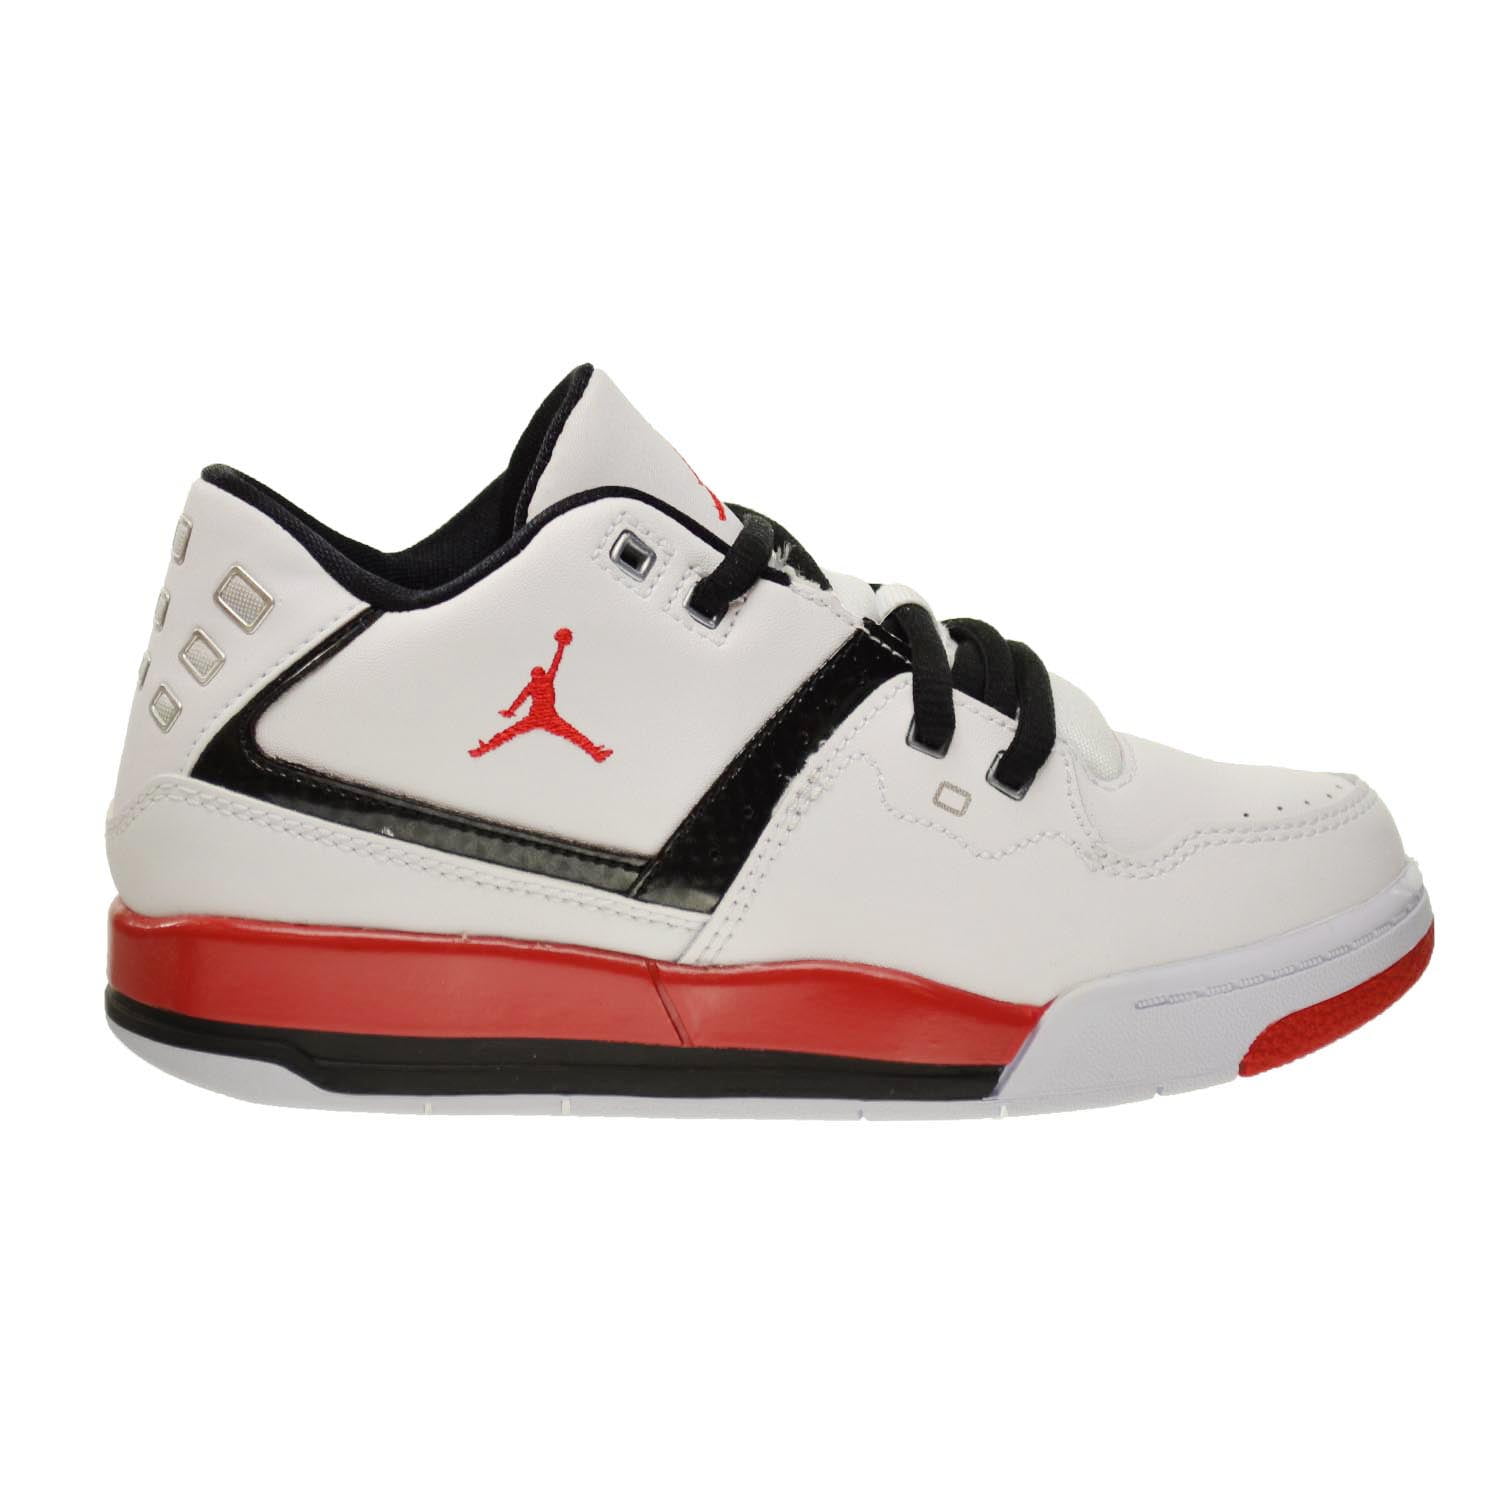 Jordan Flight 23 BP Little Kids Shoes White/University Red/Black White/University Red/Black / 2